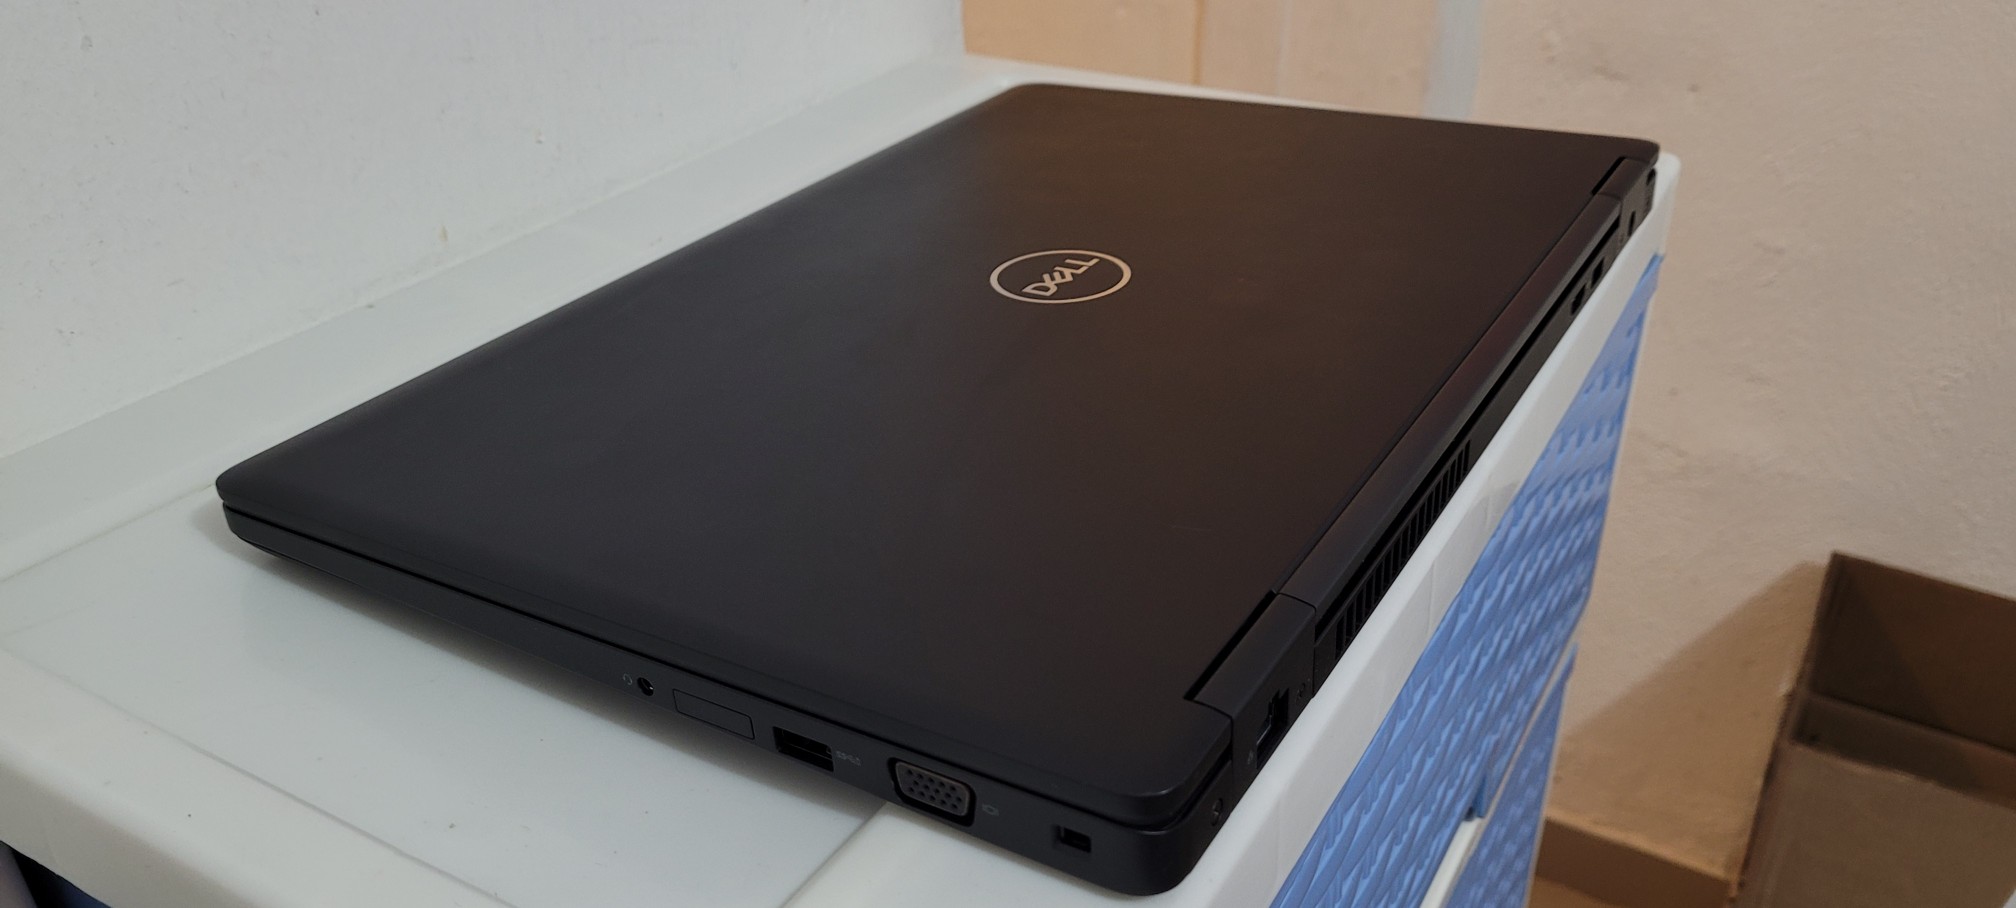 computadoras y laptops - Dell 5570 de 17 Pulg Core i7 Ram 16gb Disco SSD 512GB Video intel Y Aty Radeon 2